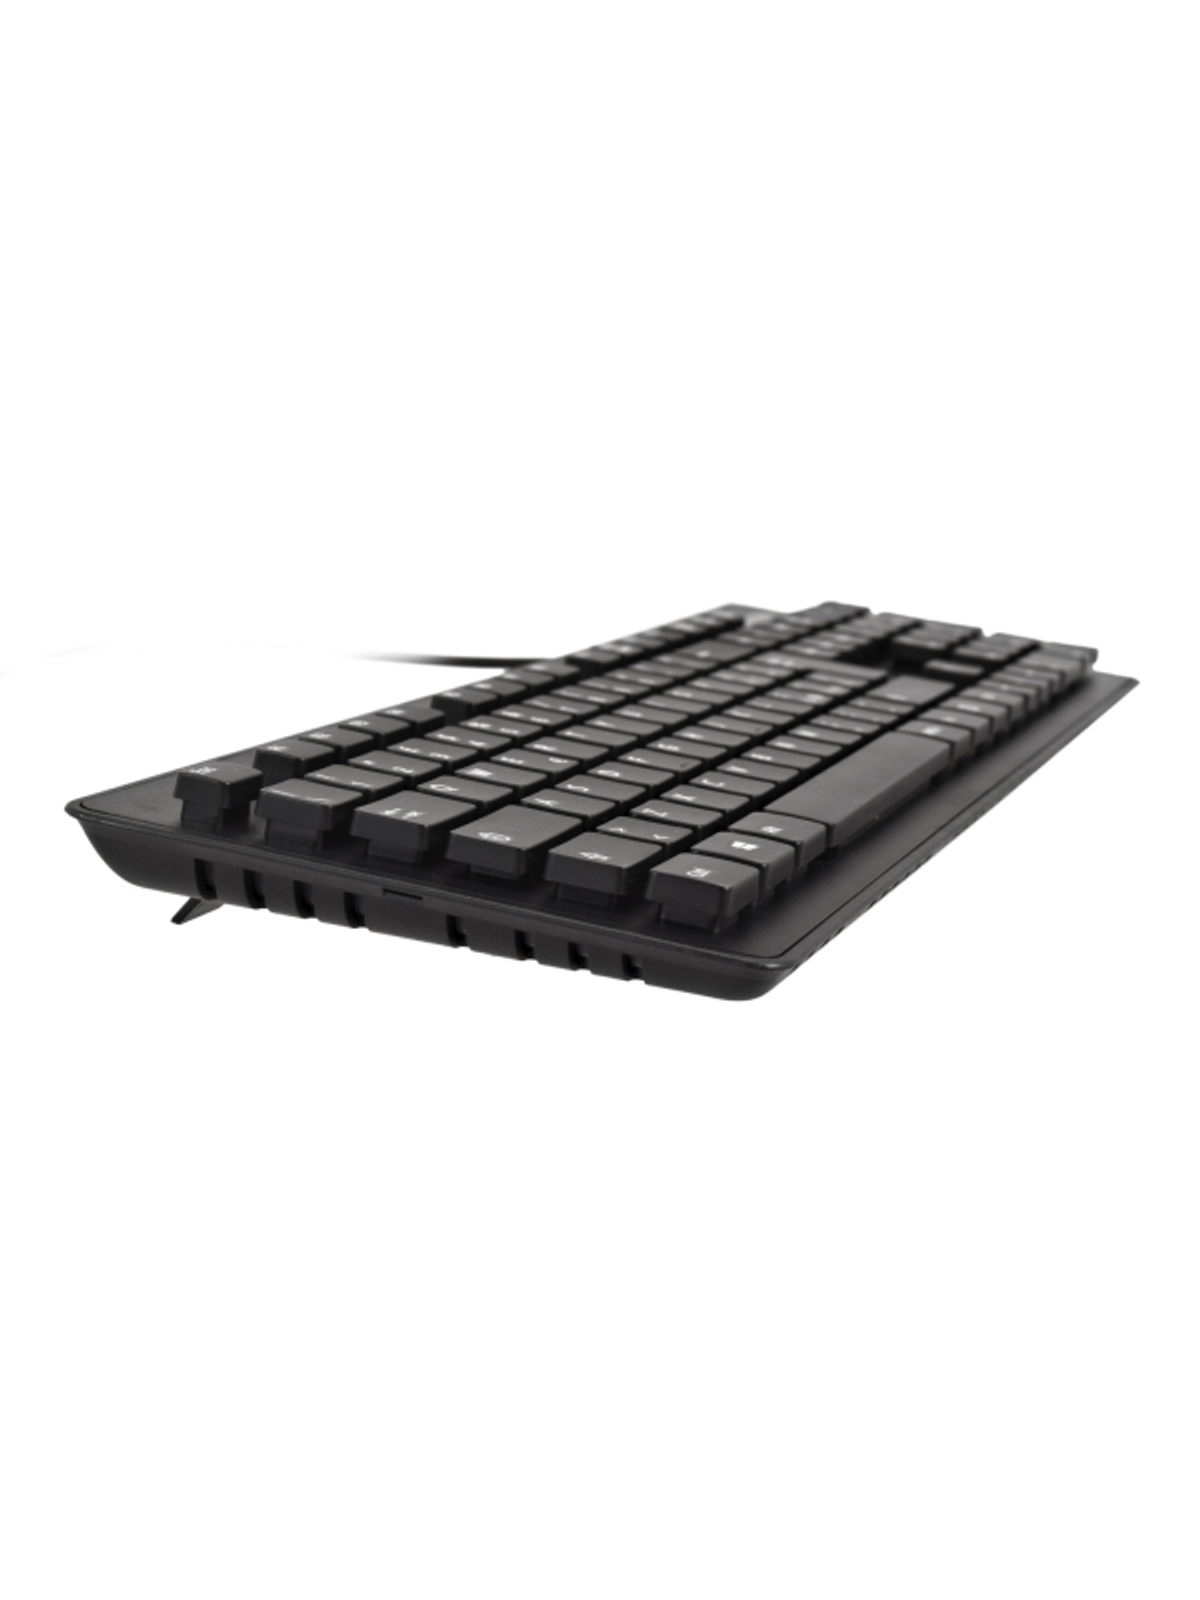 CKU700IT, V7 Maus Schwarz Set, Tastatur